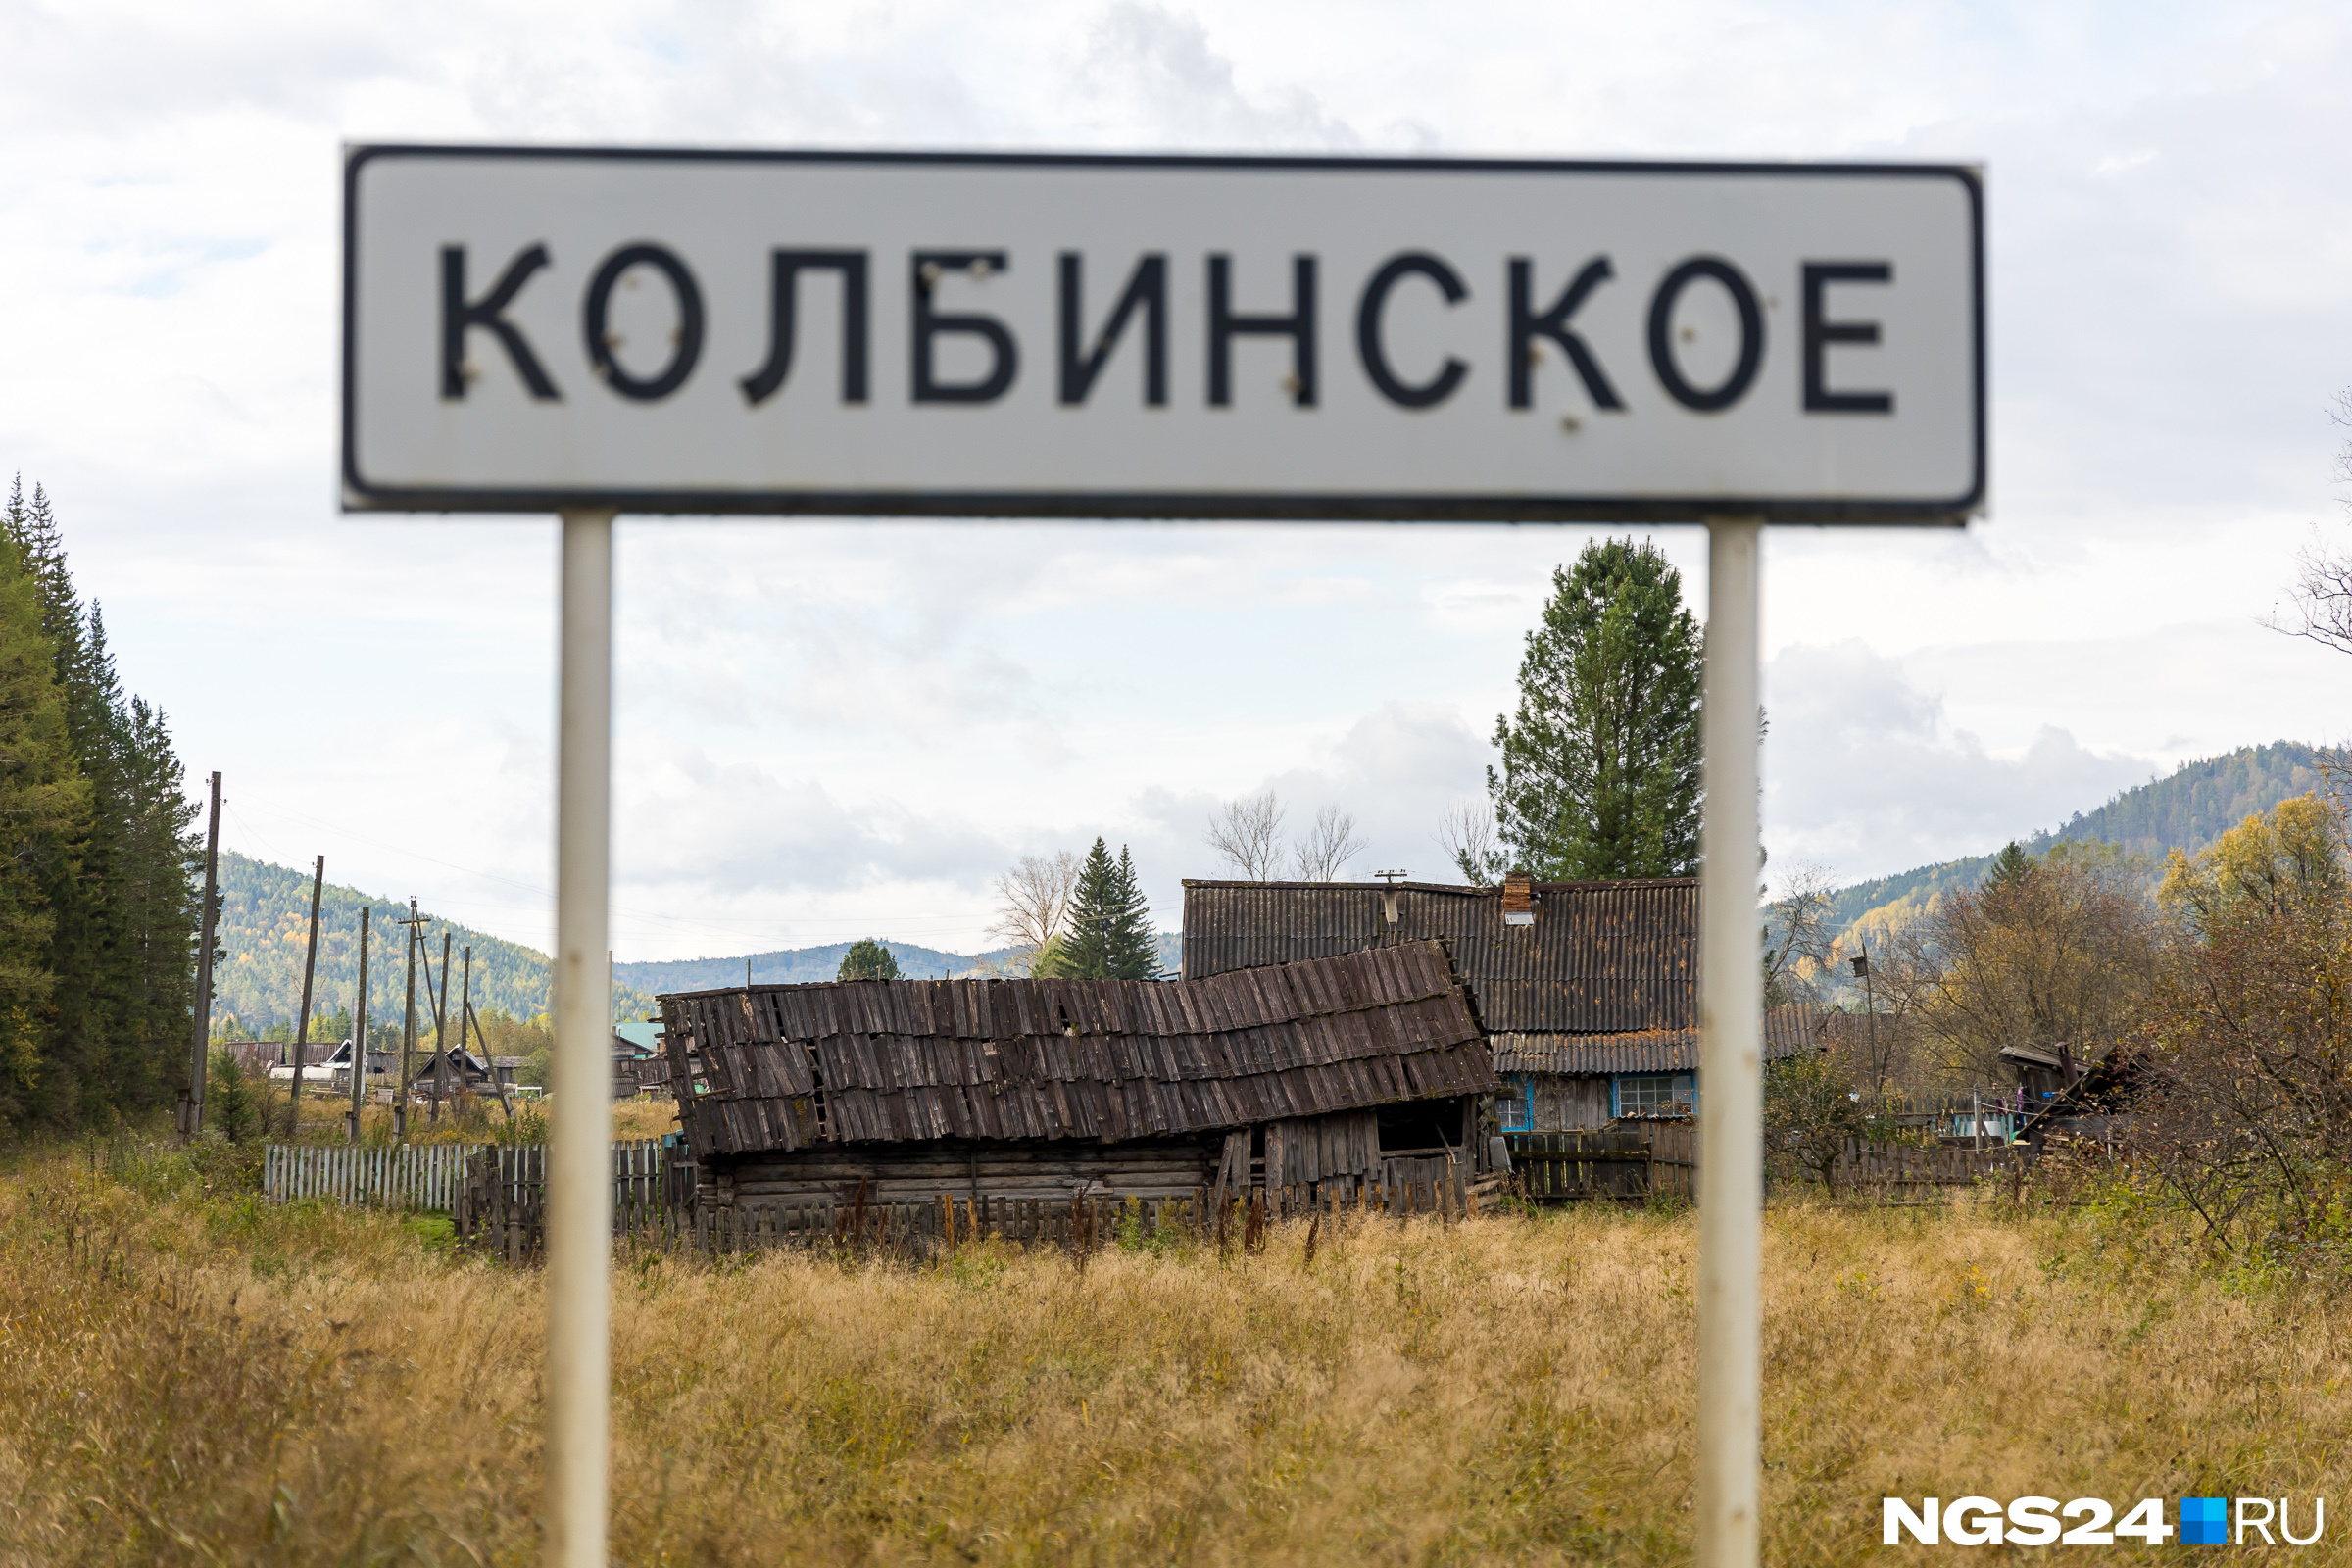 Жители настаивают, что название на въезде поселения неверно — официально поселок называет Колбинский